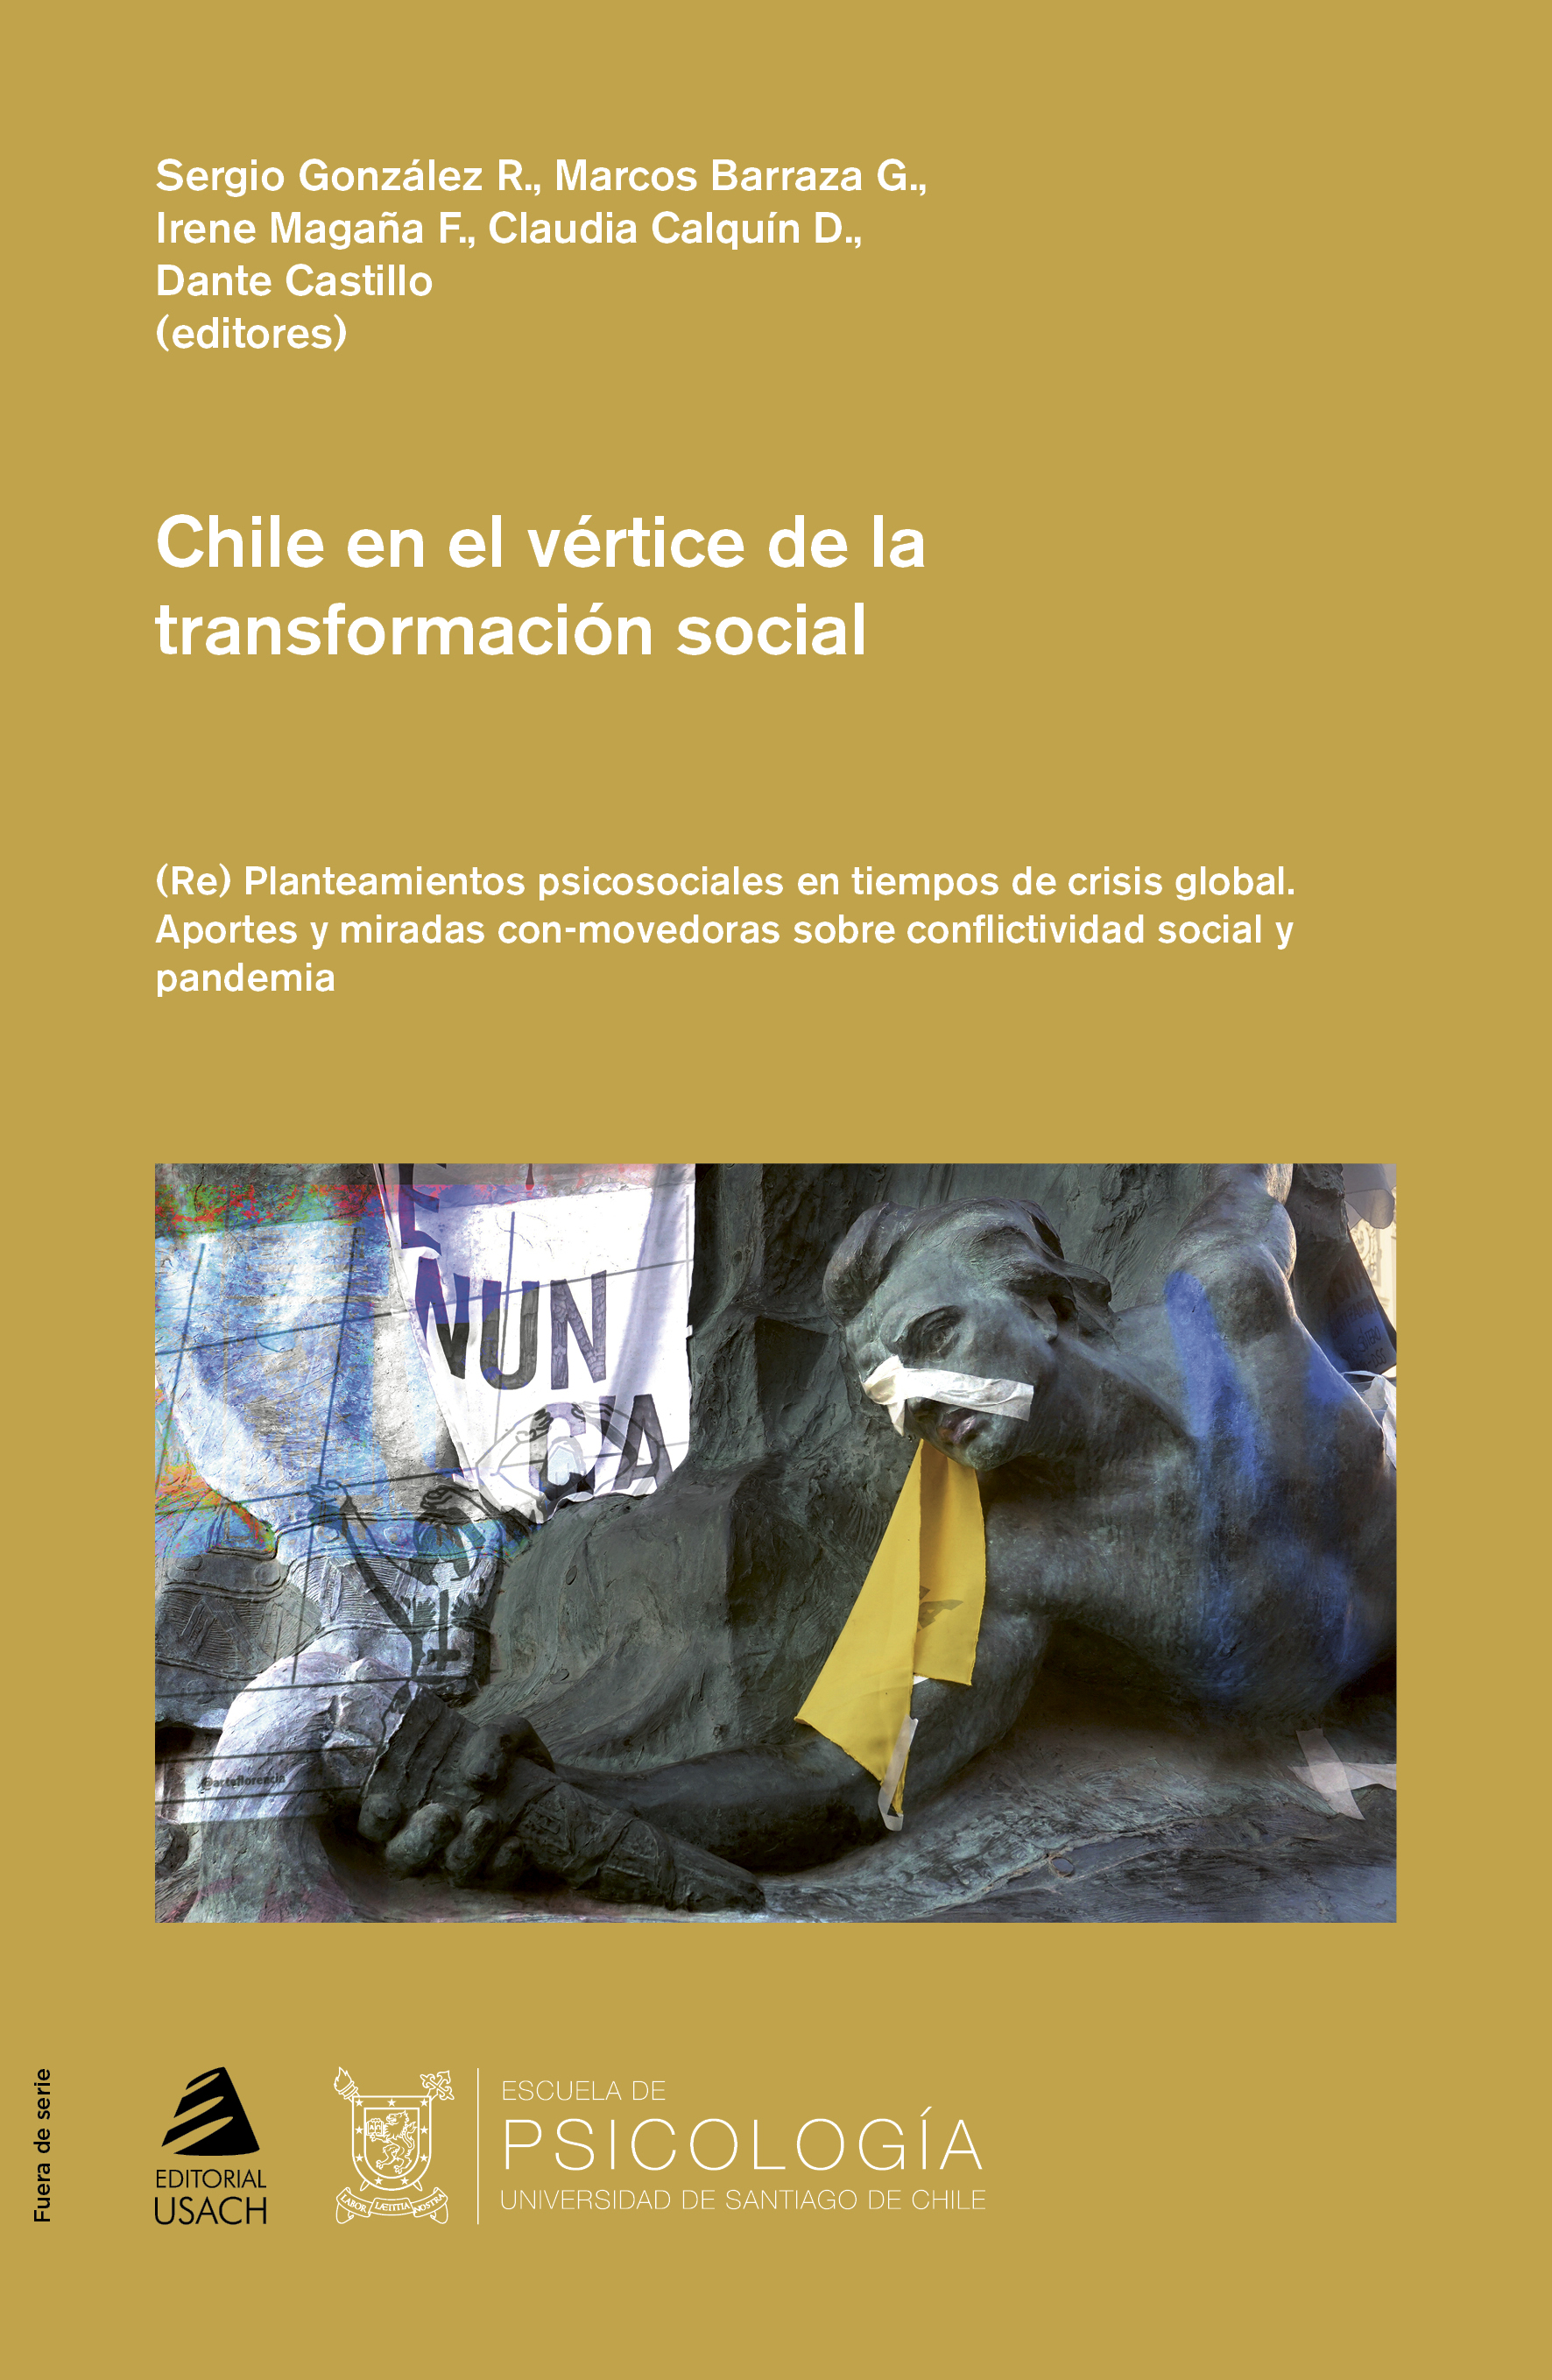 Chile en el vértice de la transformación social. (Re) Planteamientos psicosociales en tiempos de crisis global